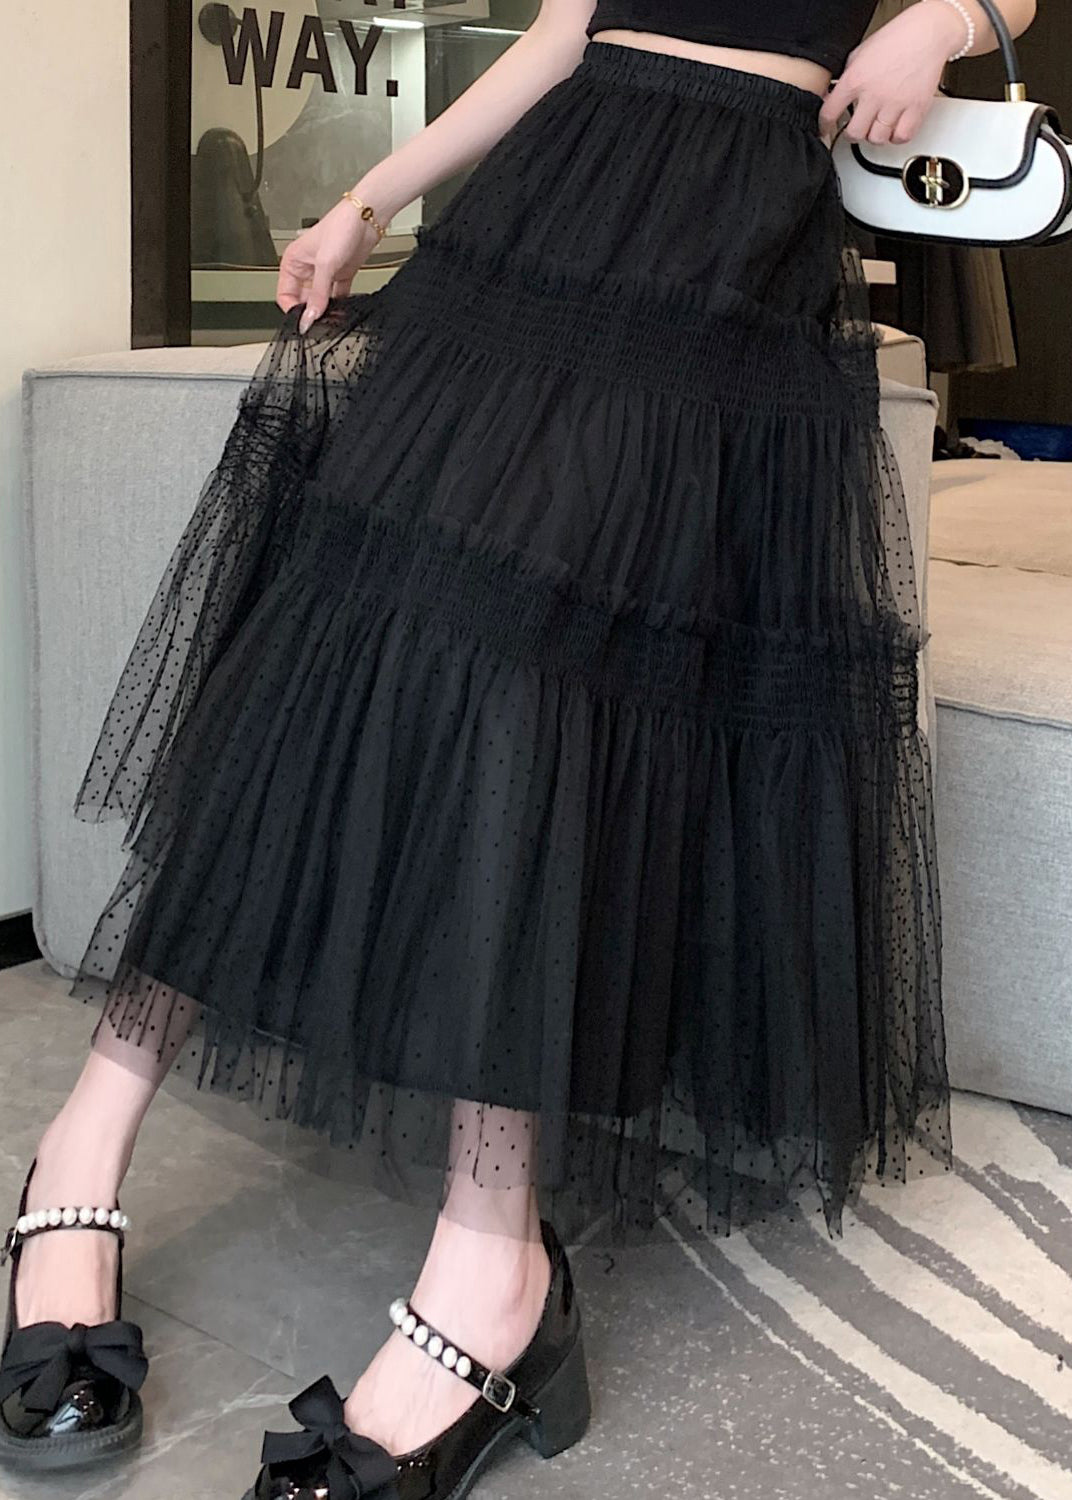 Women Black Ruffled Patchwork Elastic Waist Tulle Skirt Summer